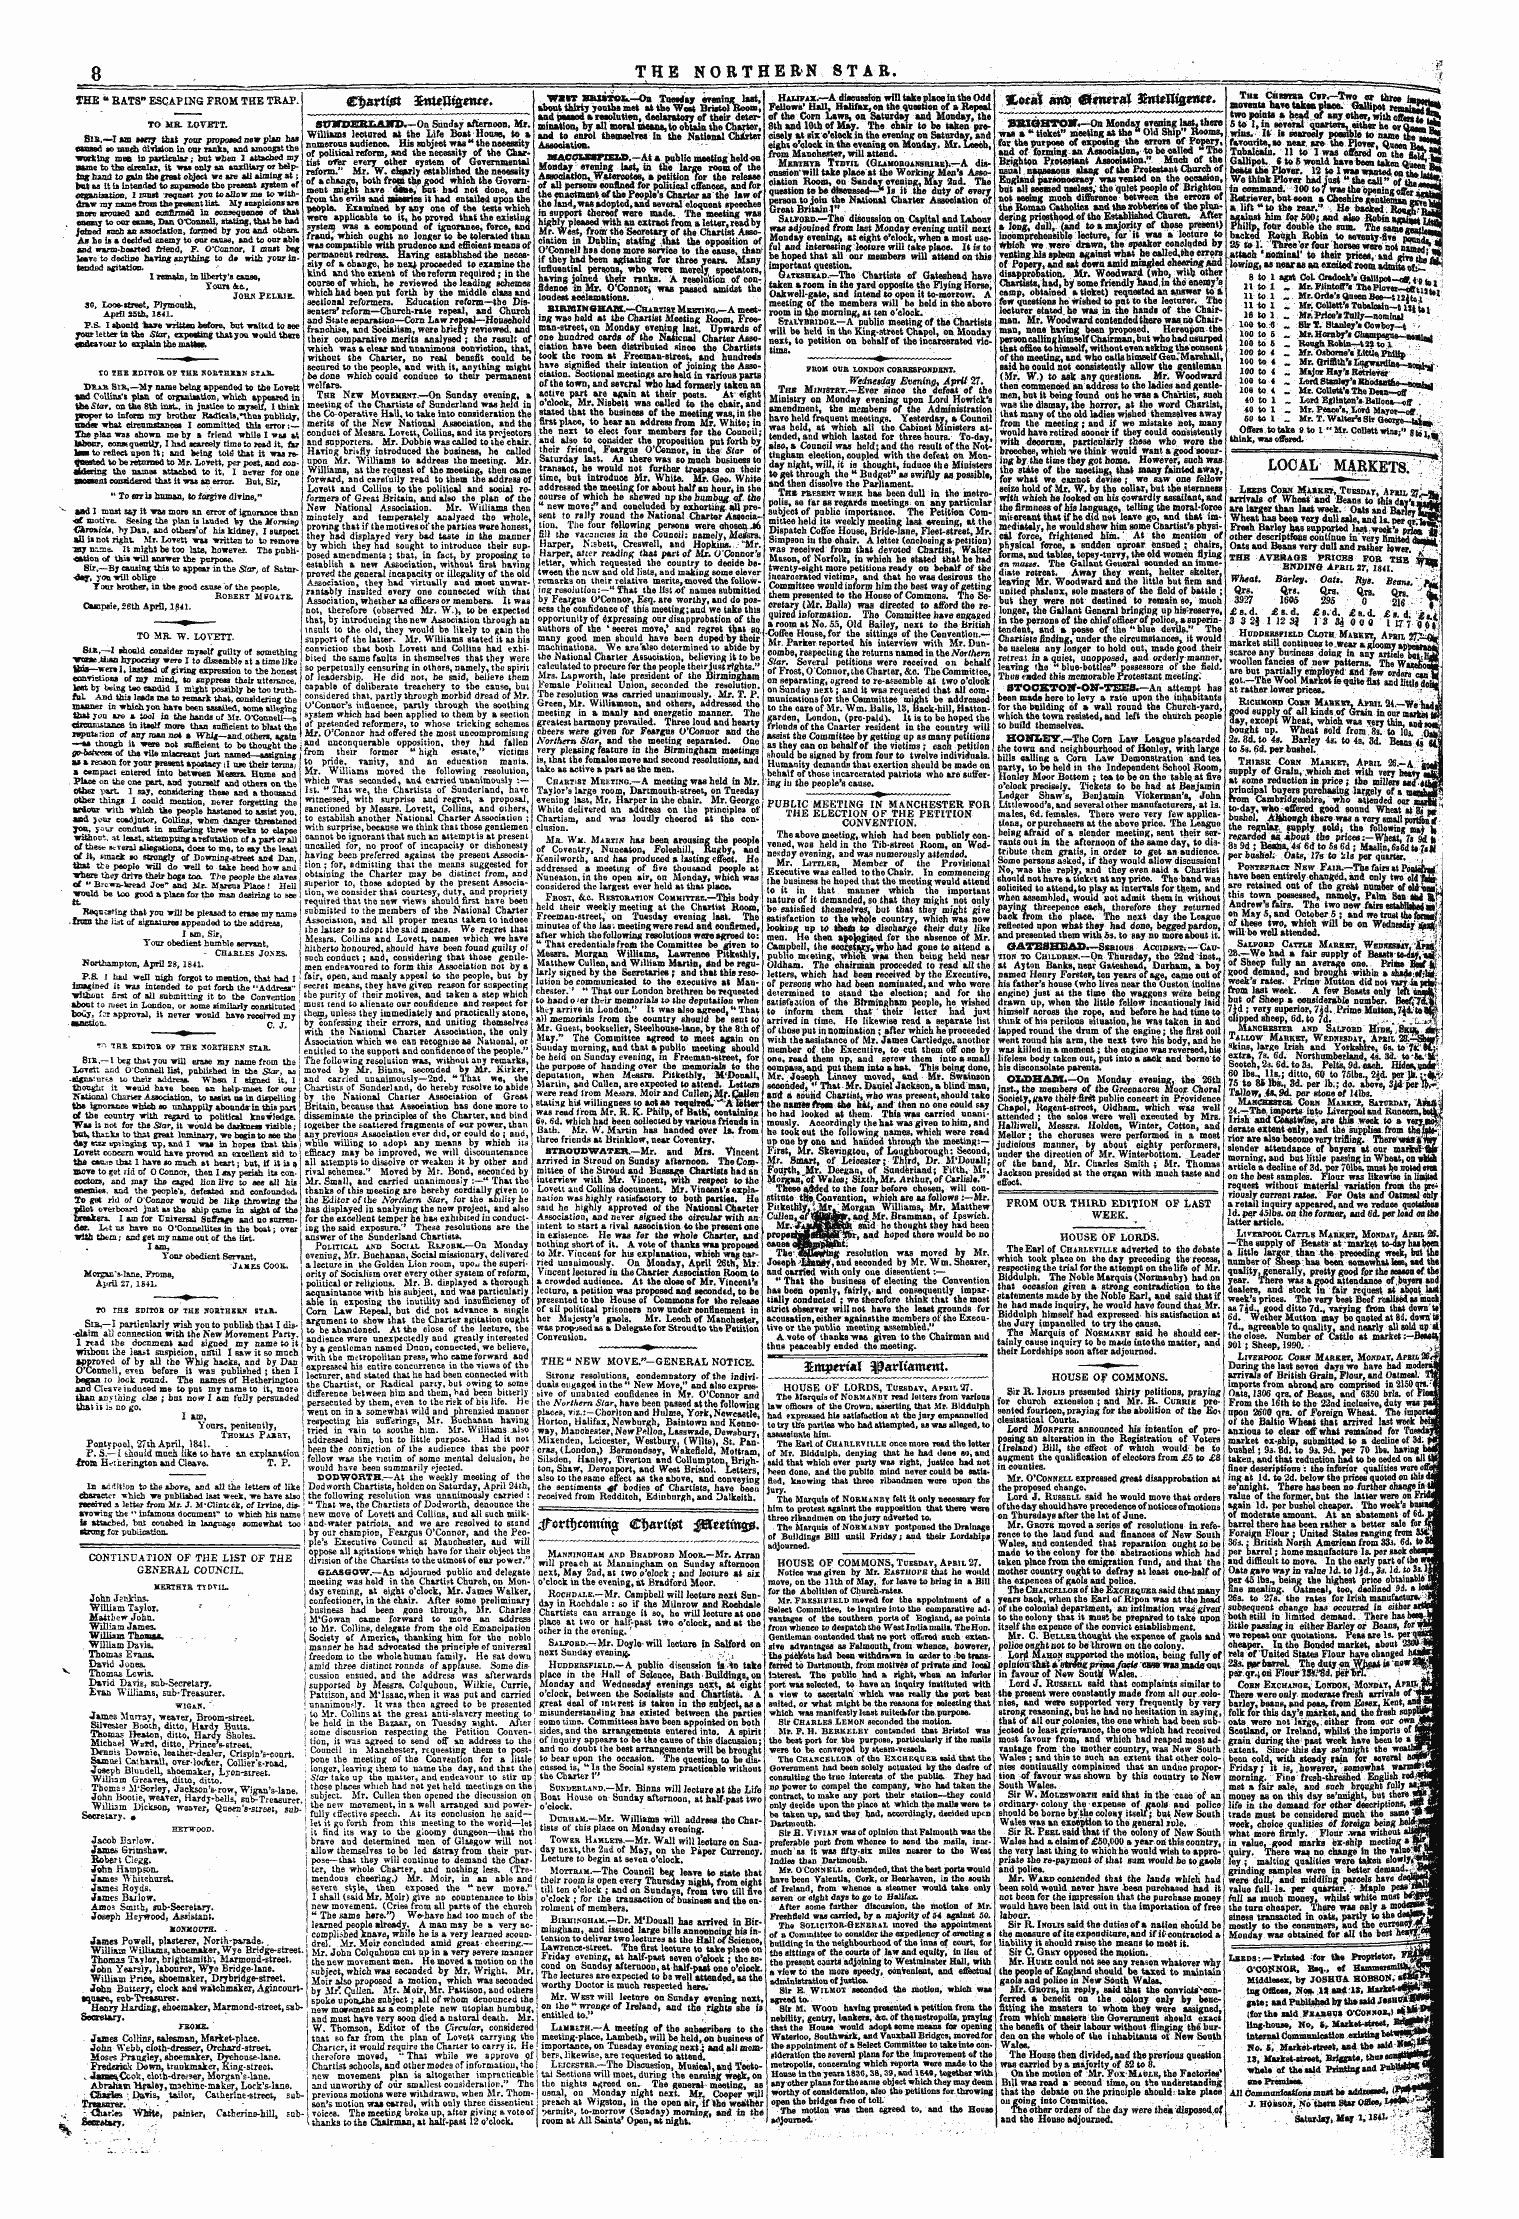 Northern Star (1837-1852): jS F Y, 1st edition - Xm$M«L I^Arltamcut